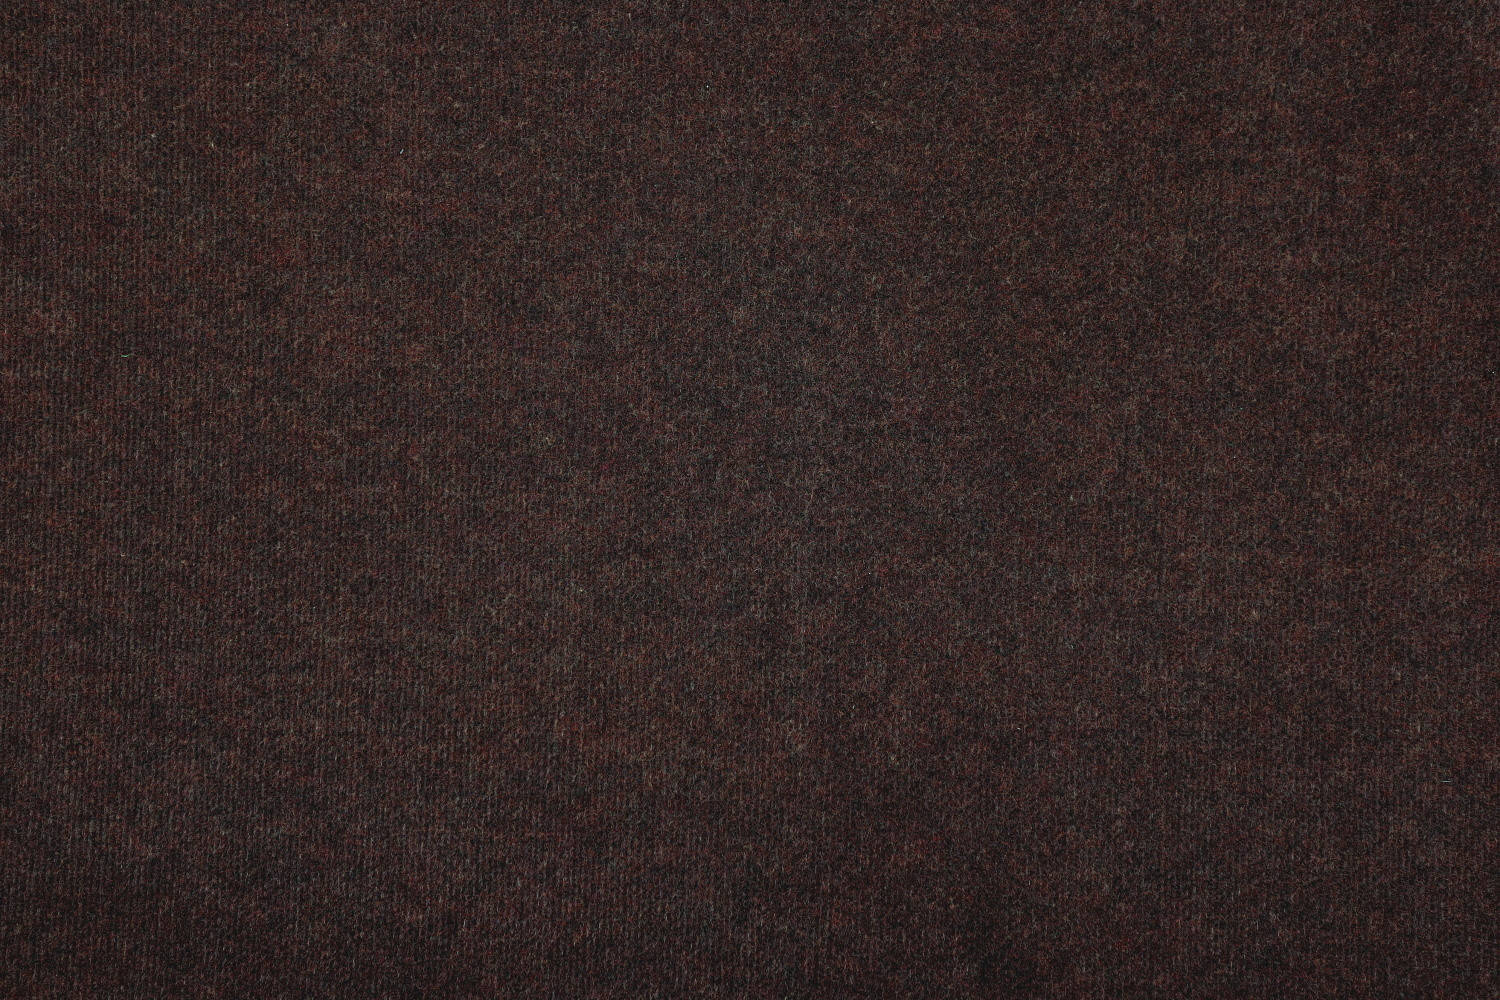 AKCE: 200x230 cm SUPER CENA: Hnědý výstavový koberec Budget metrážní - Bez obšití cm Aladin Holland carpets